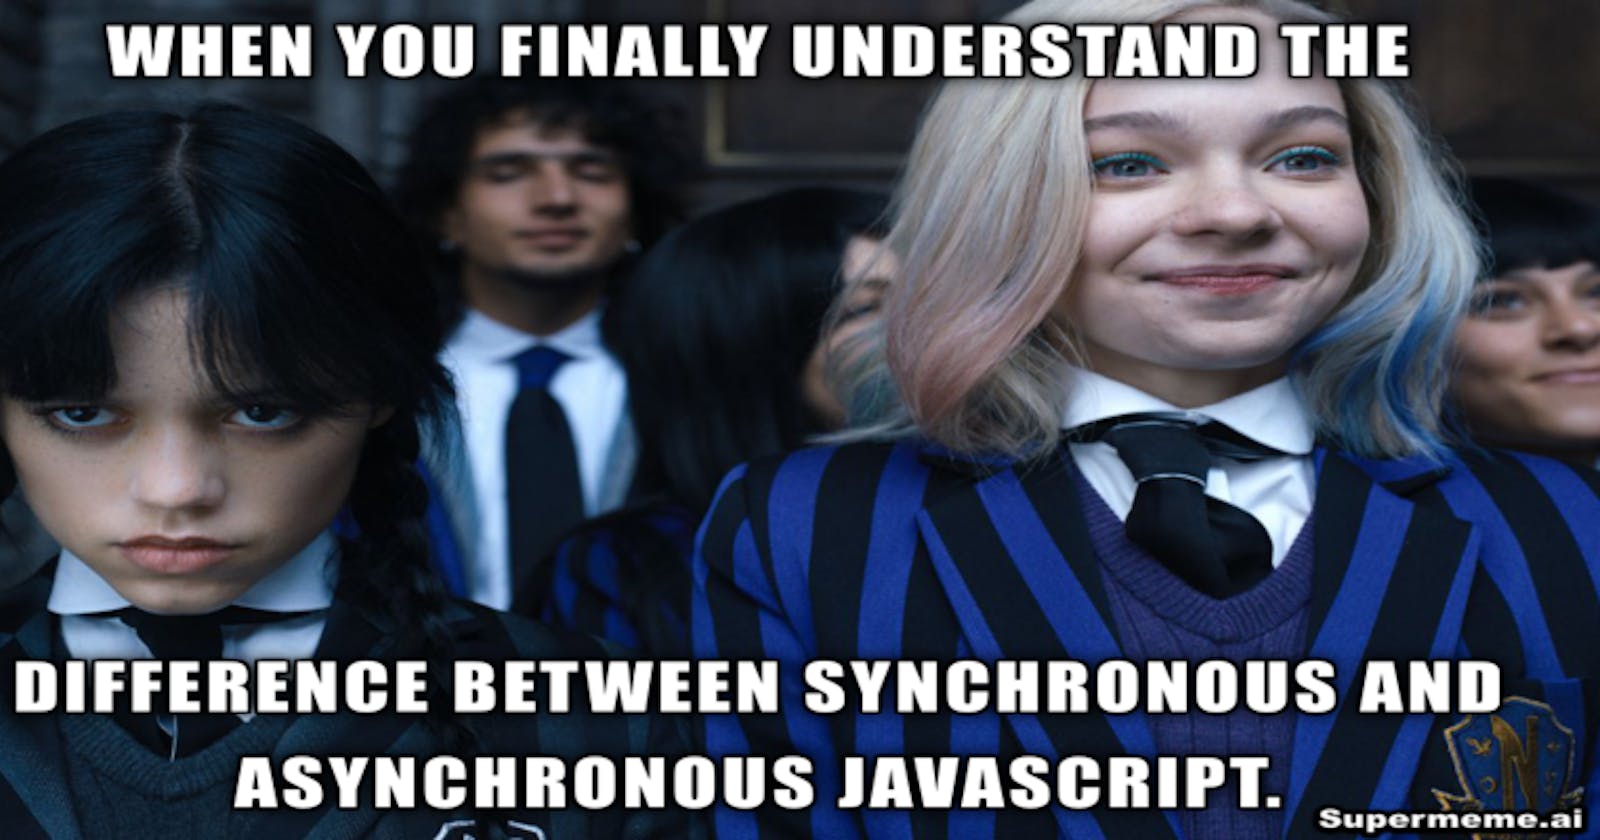 Synchronous vs Asynchronous